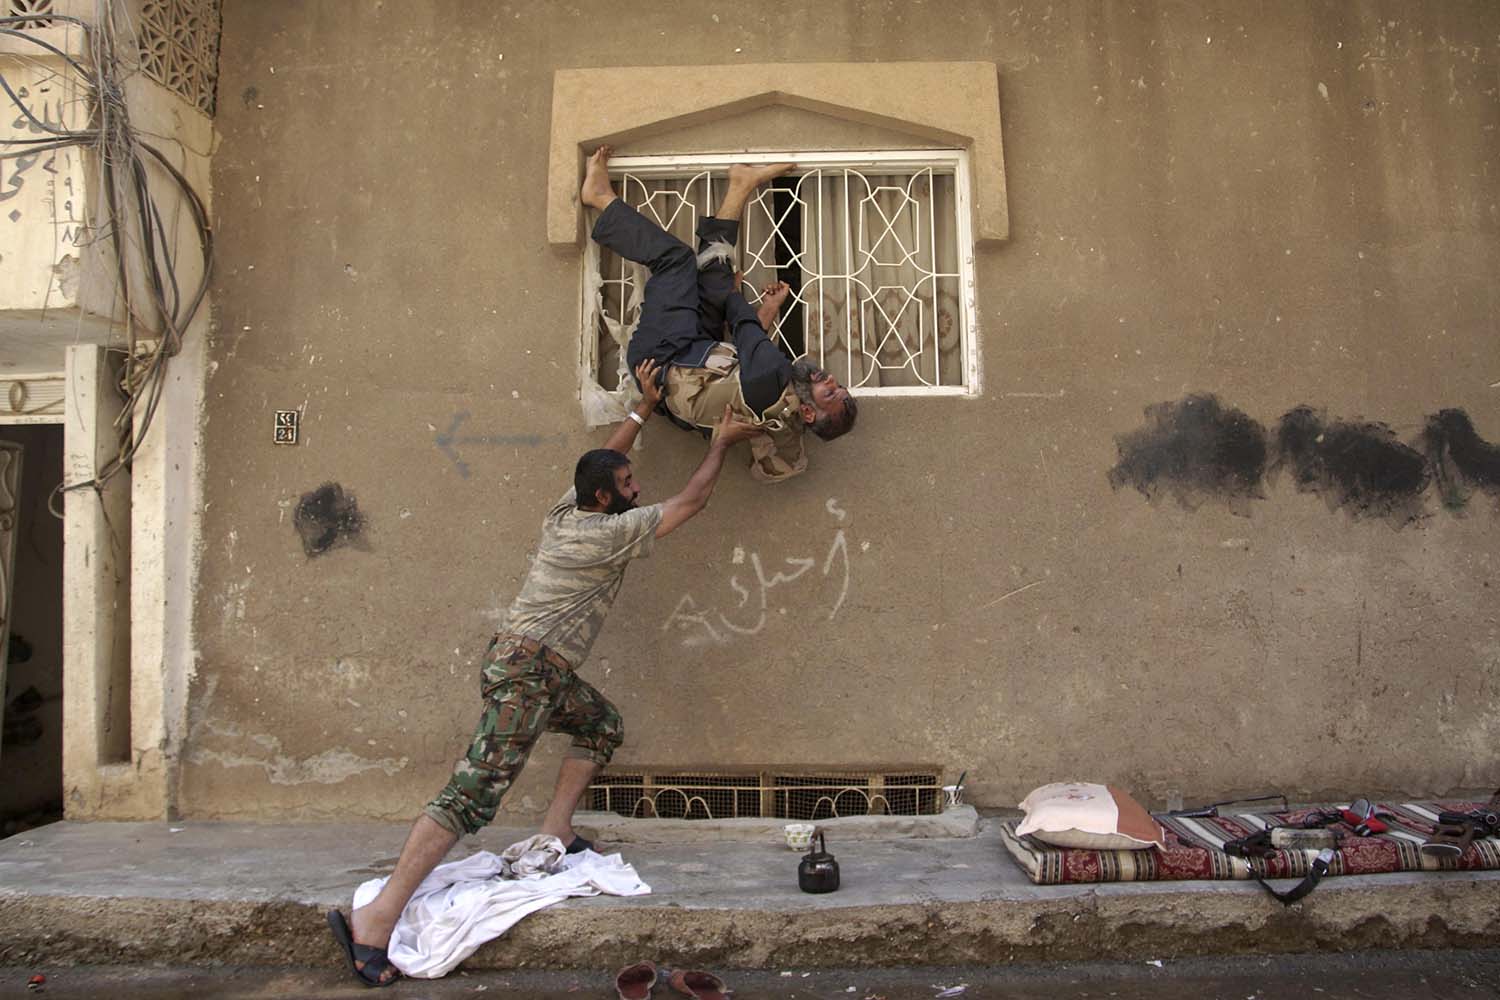 Especial Ejército Libre Sirio. Fotos de los rebeldes sirios en actitudes más lúdicas que bélicas